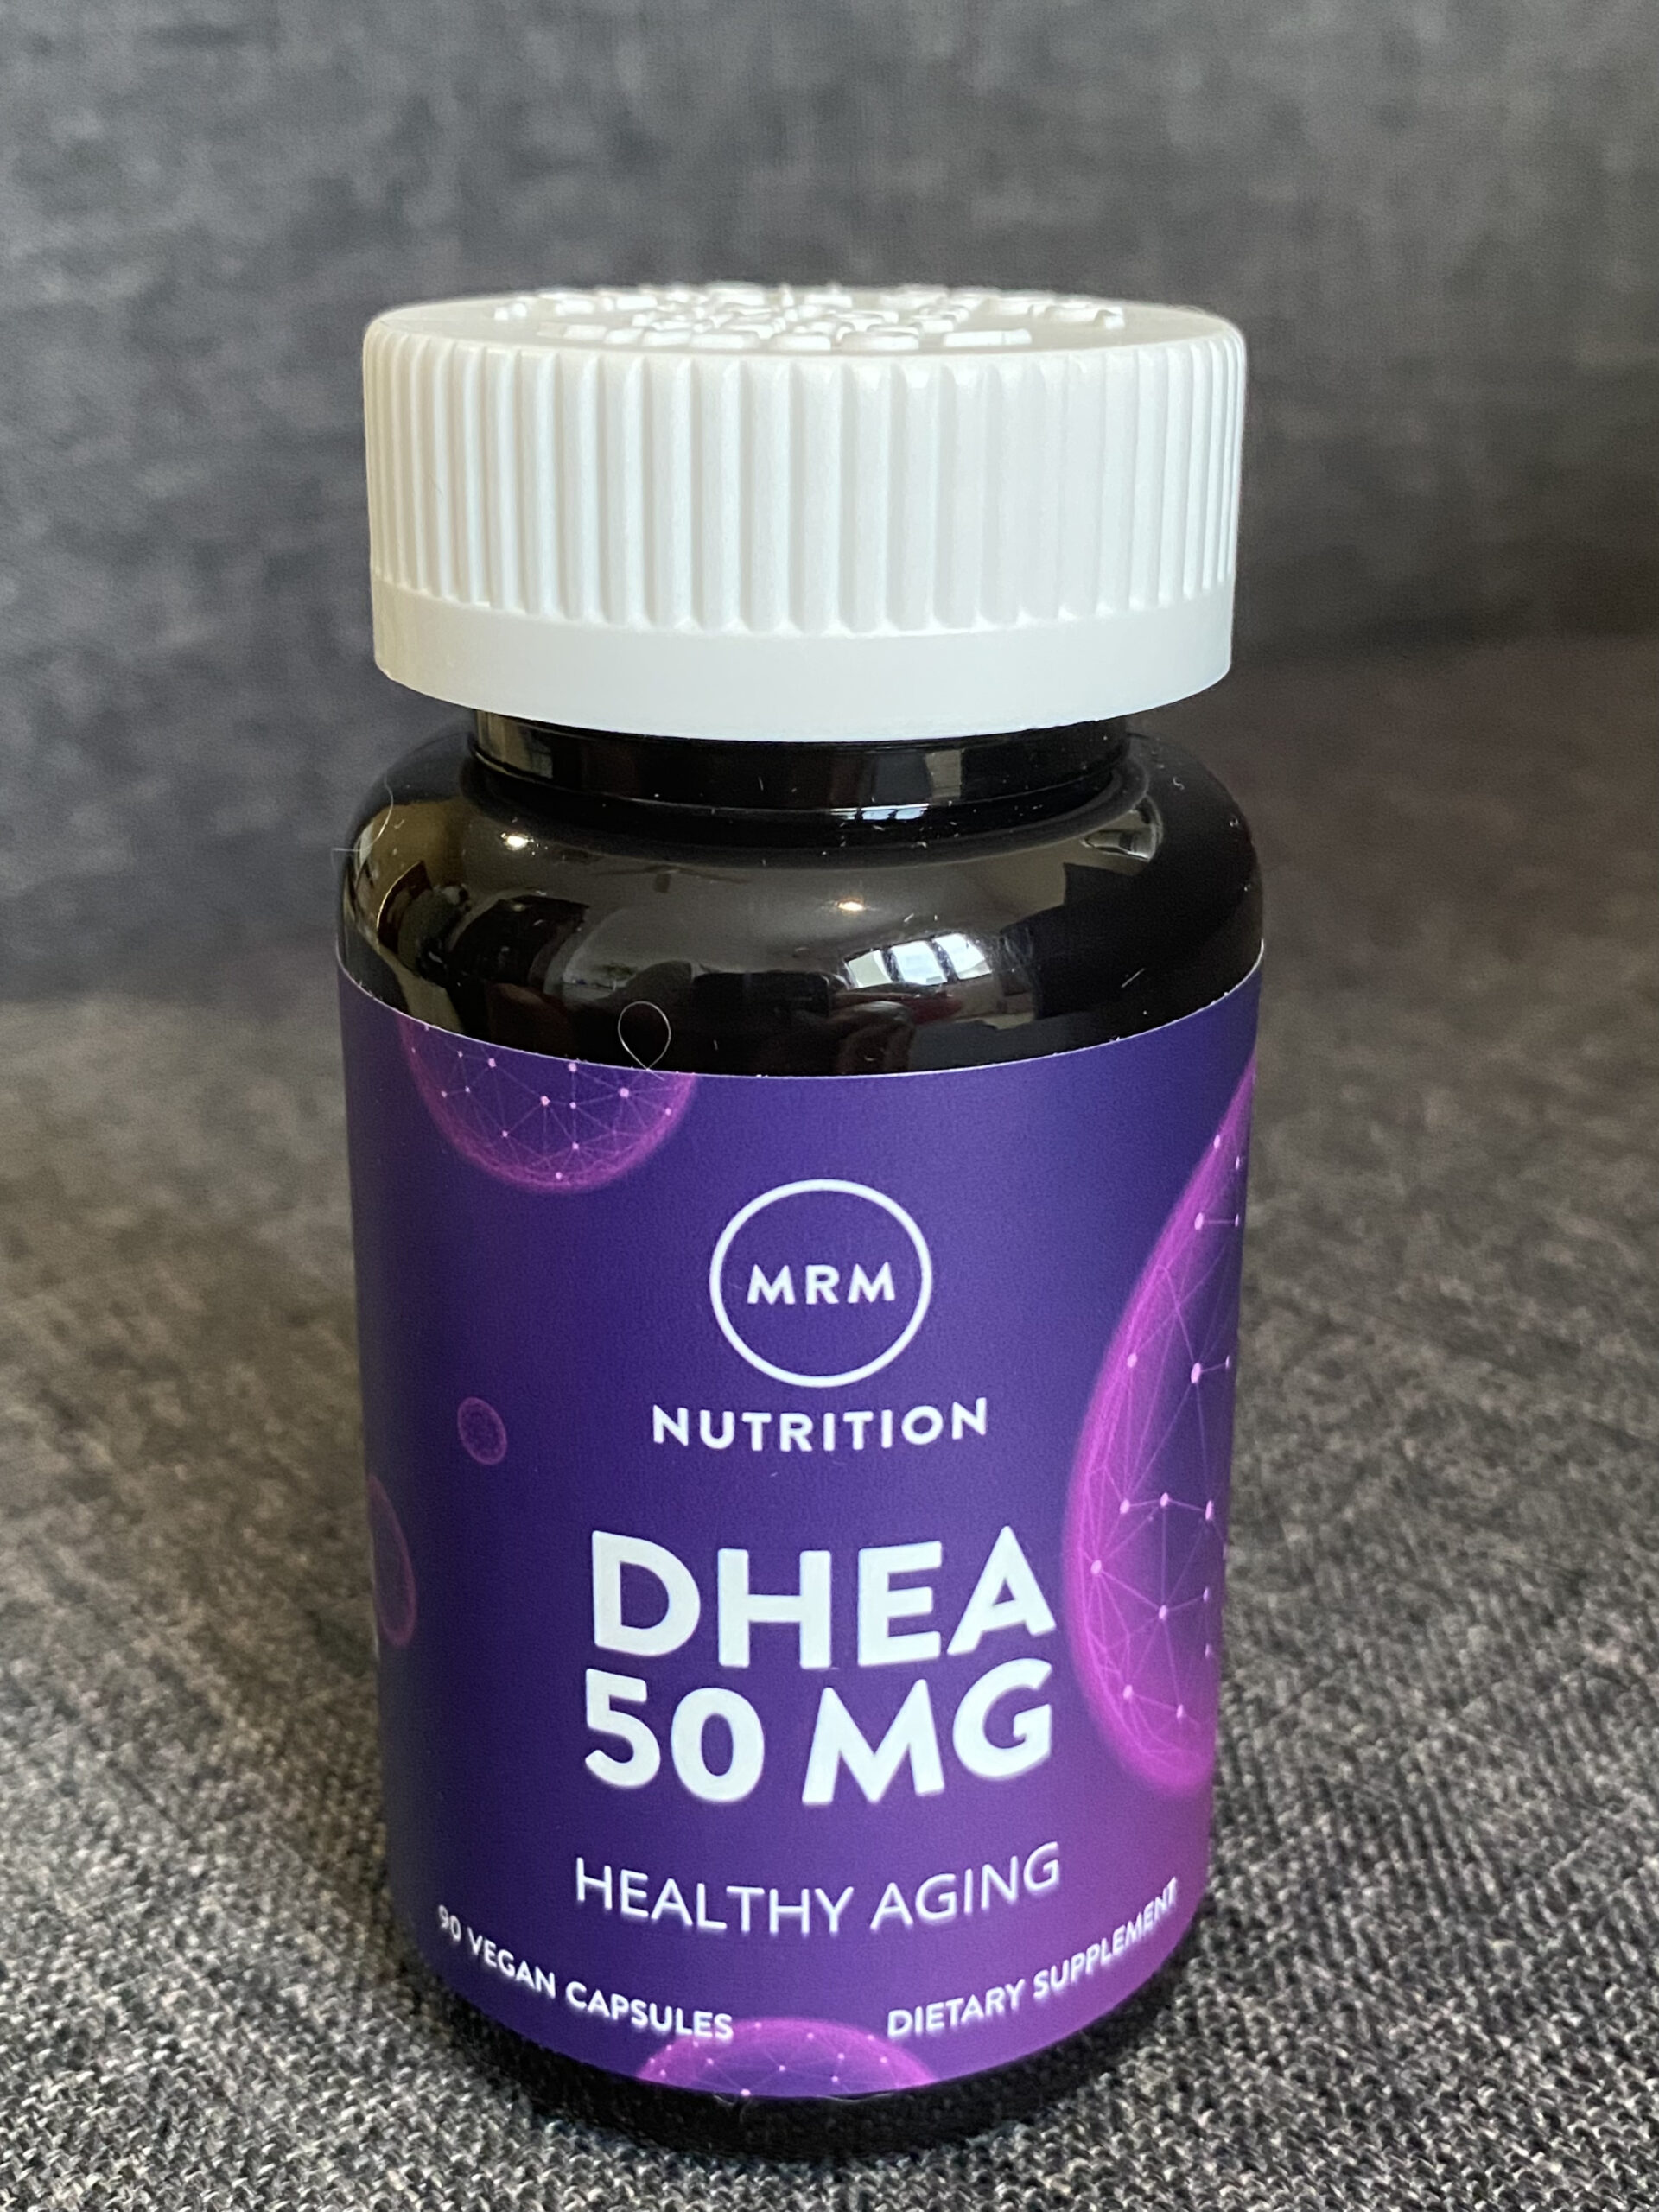 A Purple Bottle Of DHEA